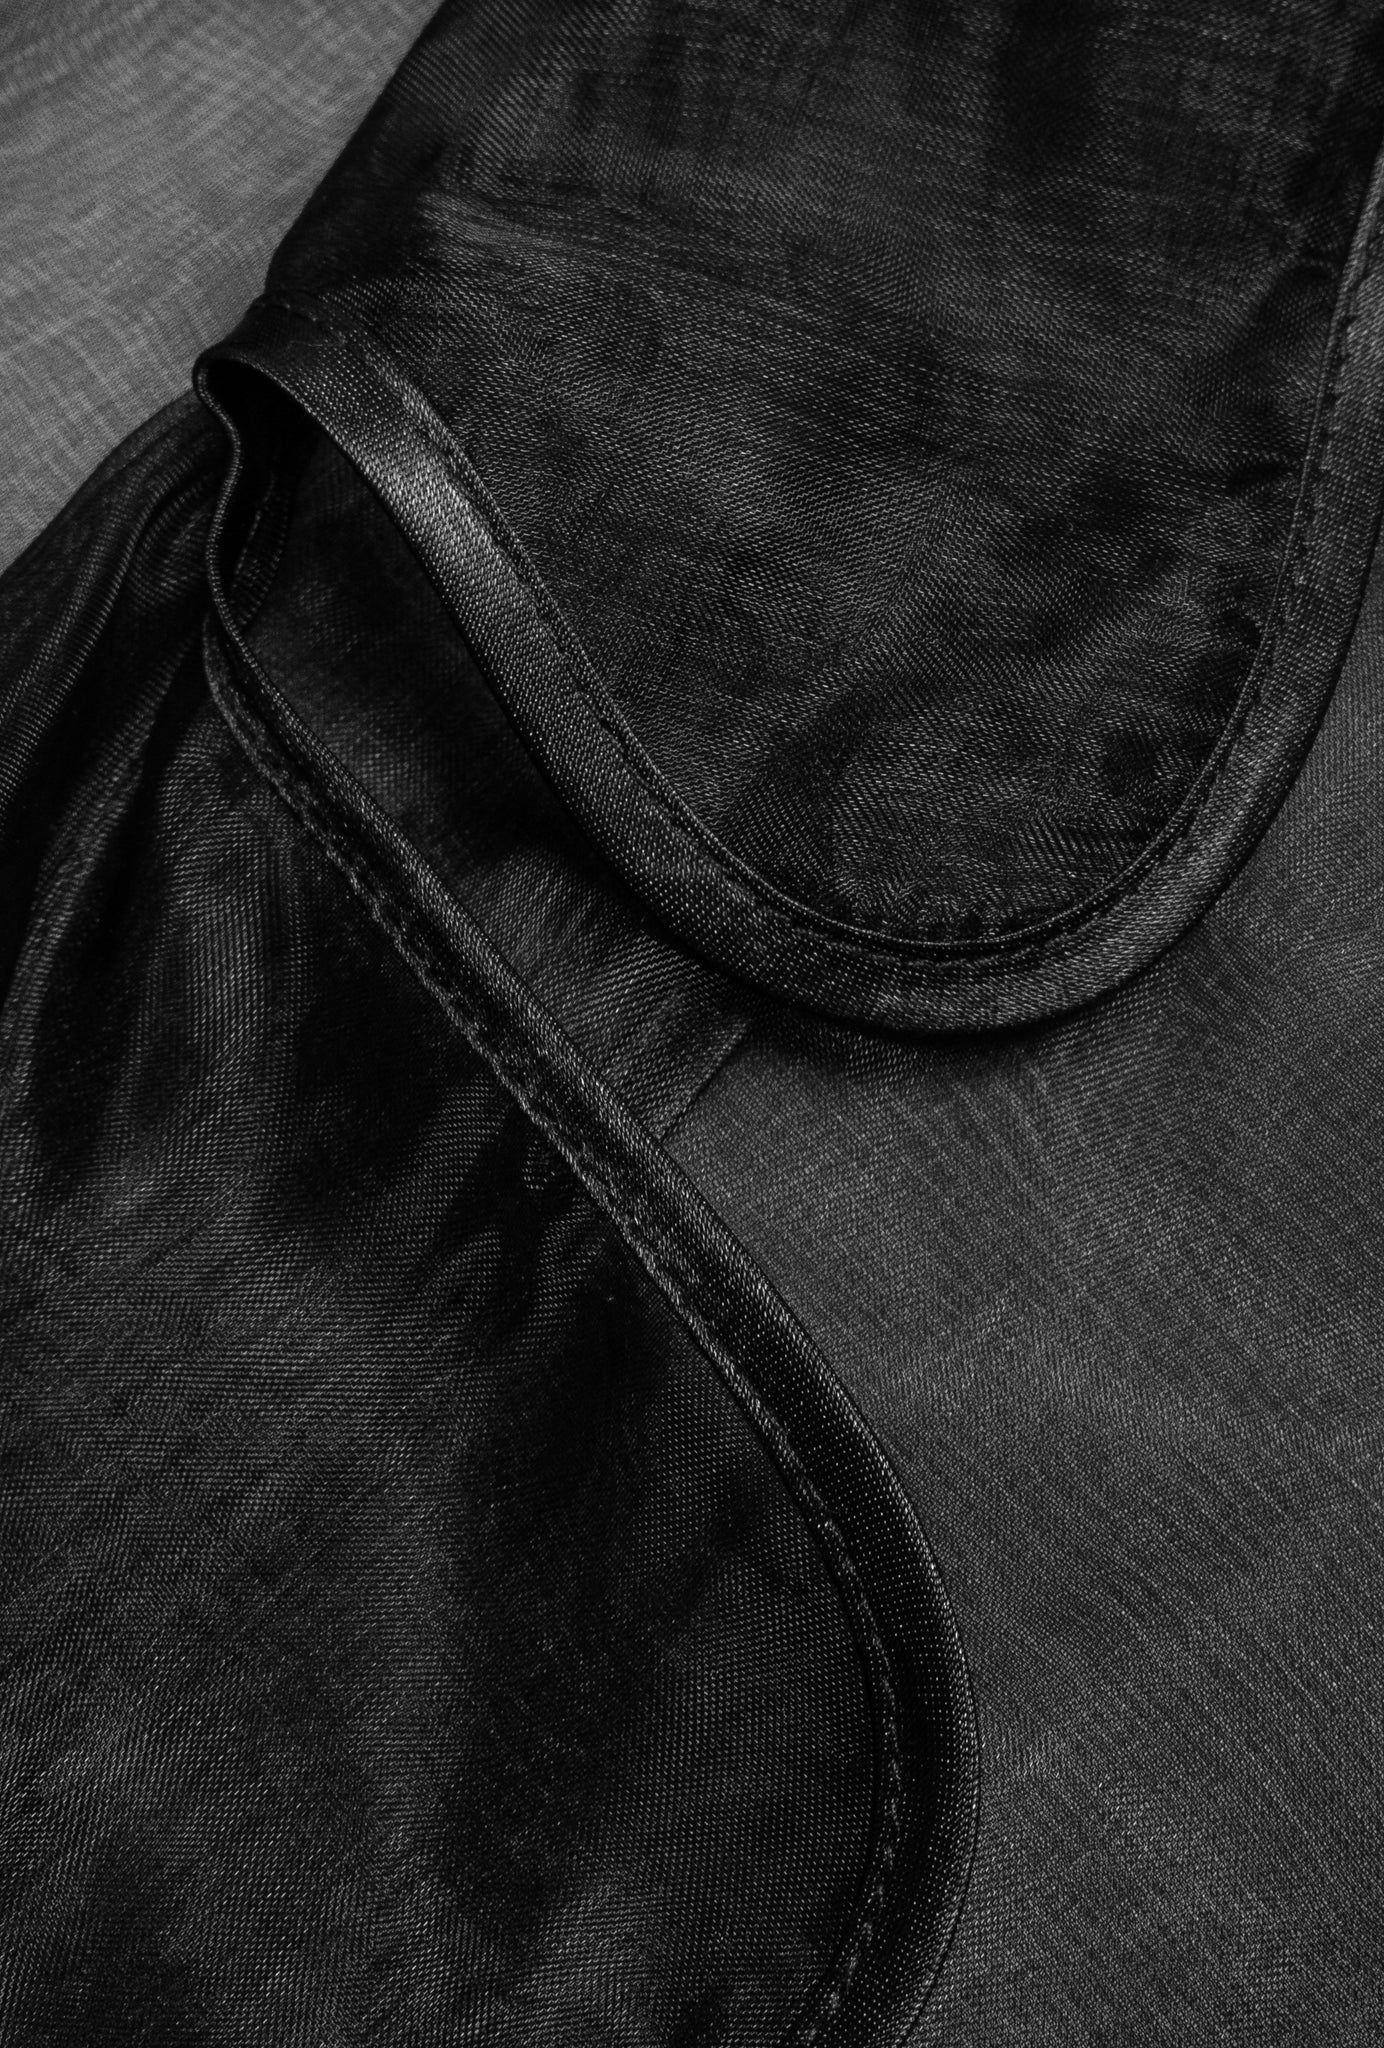 Ghost organza coat black